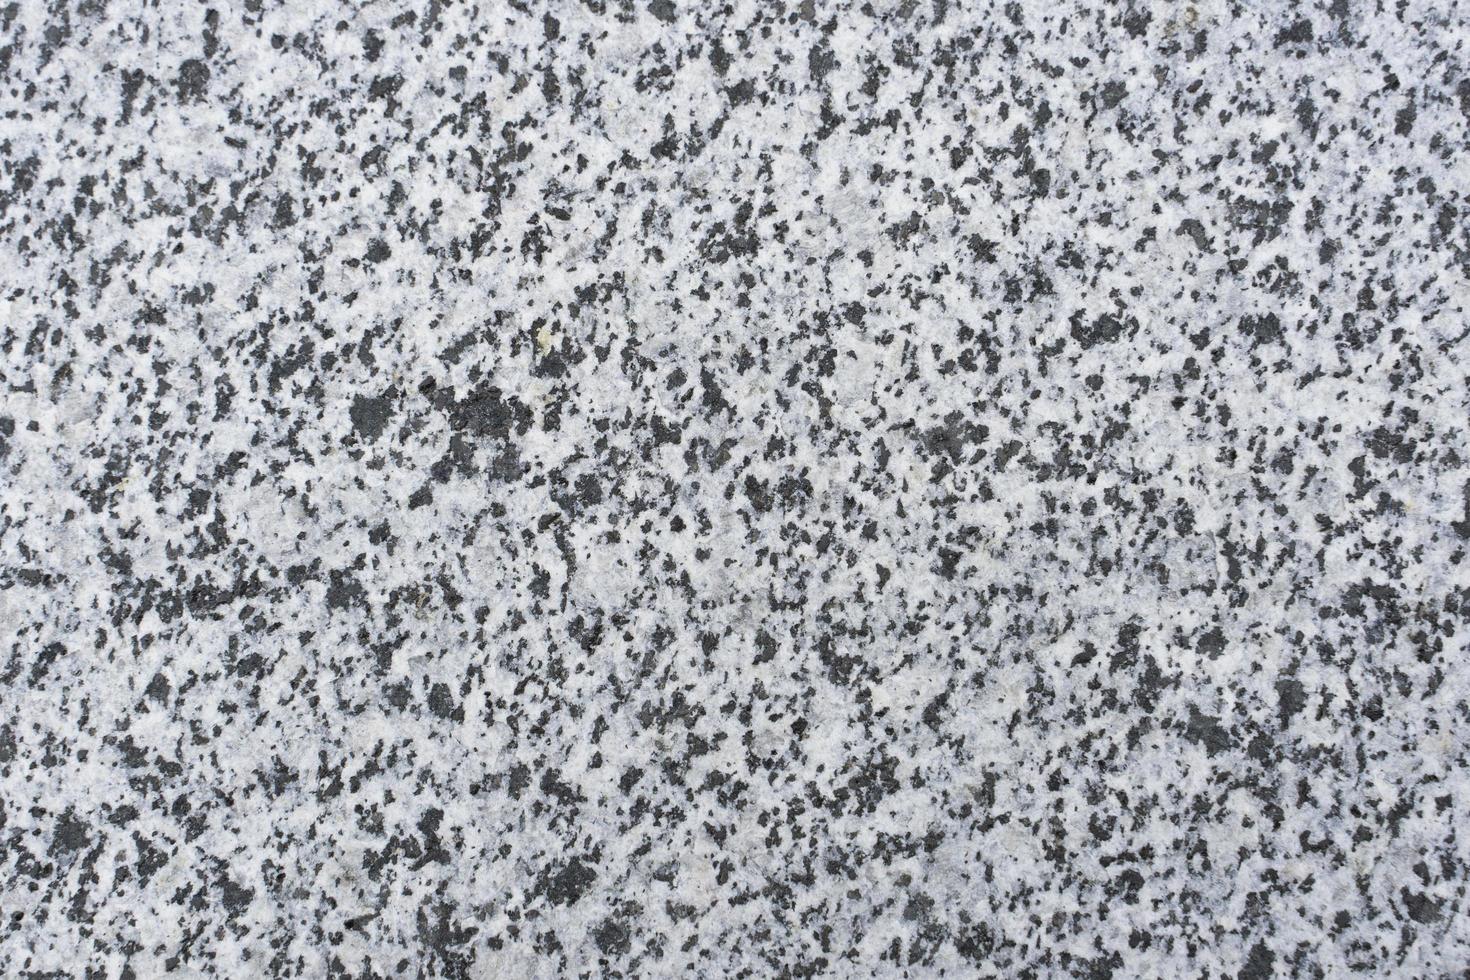 la texture du marbre est granuleuse gros plan de couleur grise et blanche photo